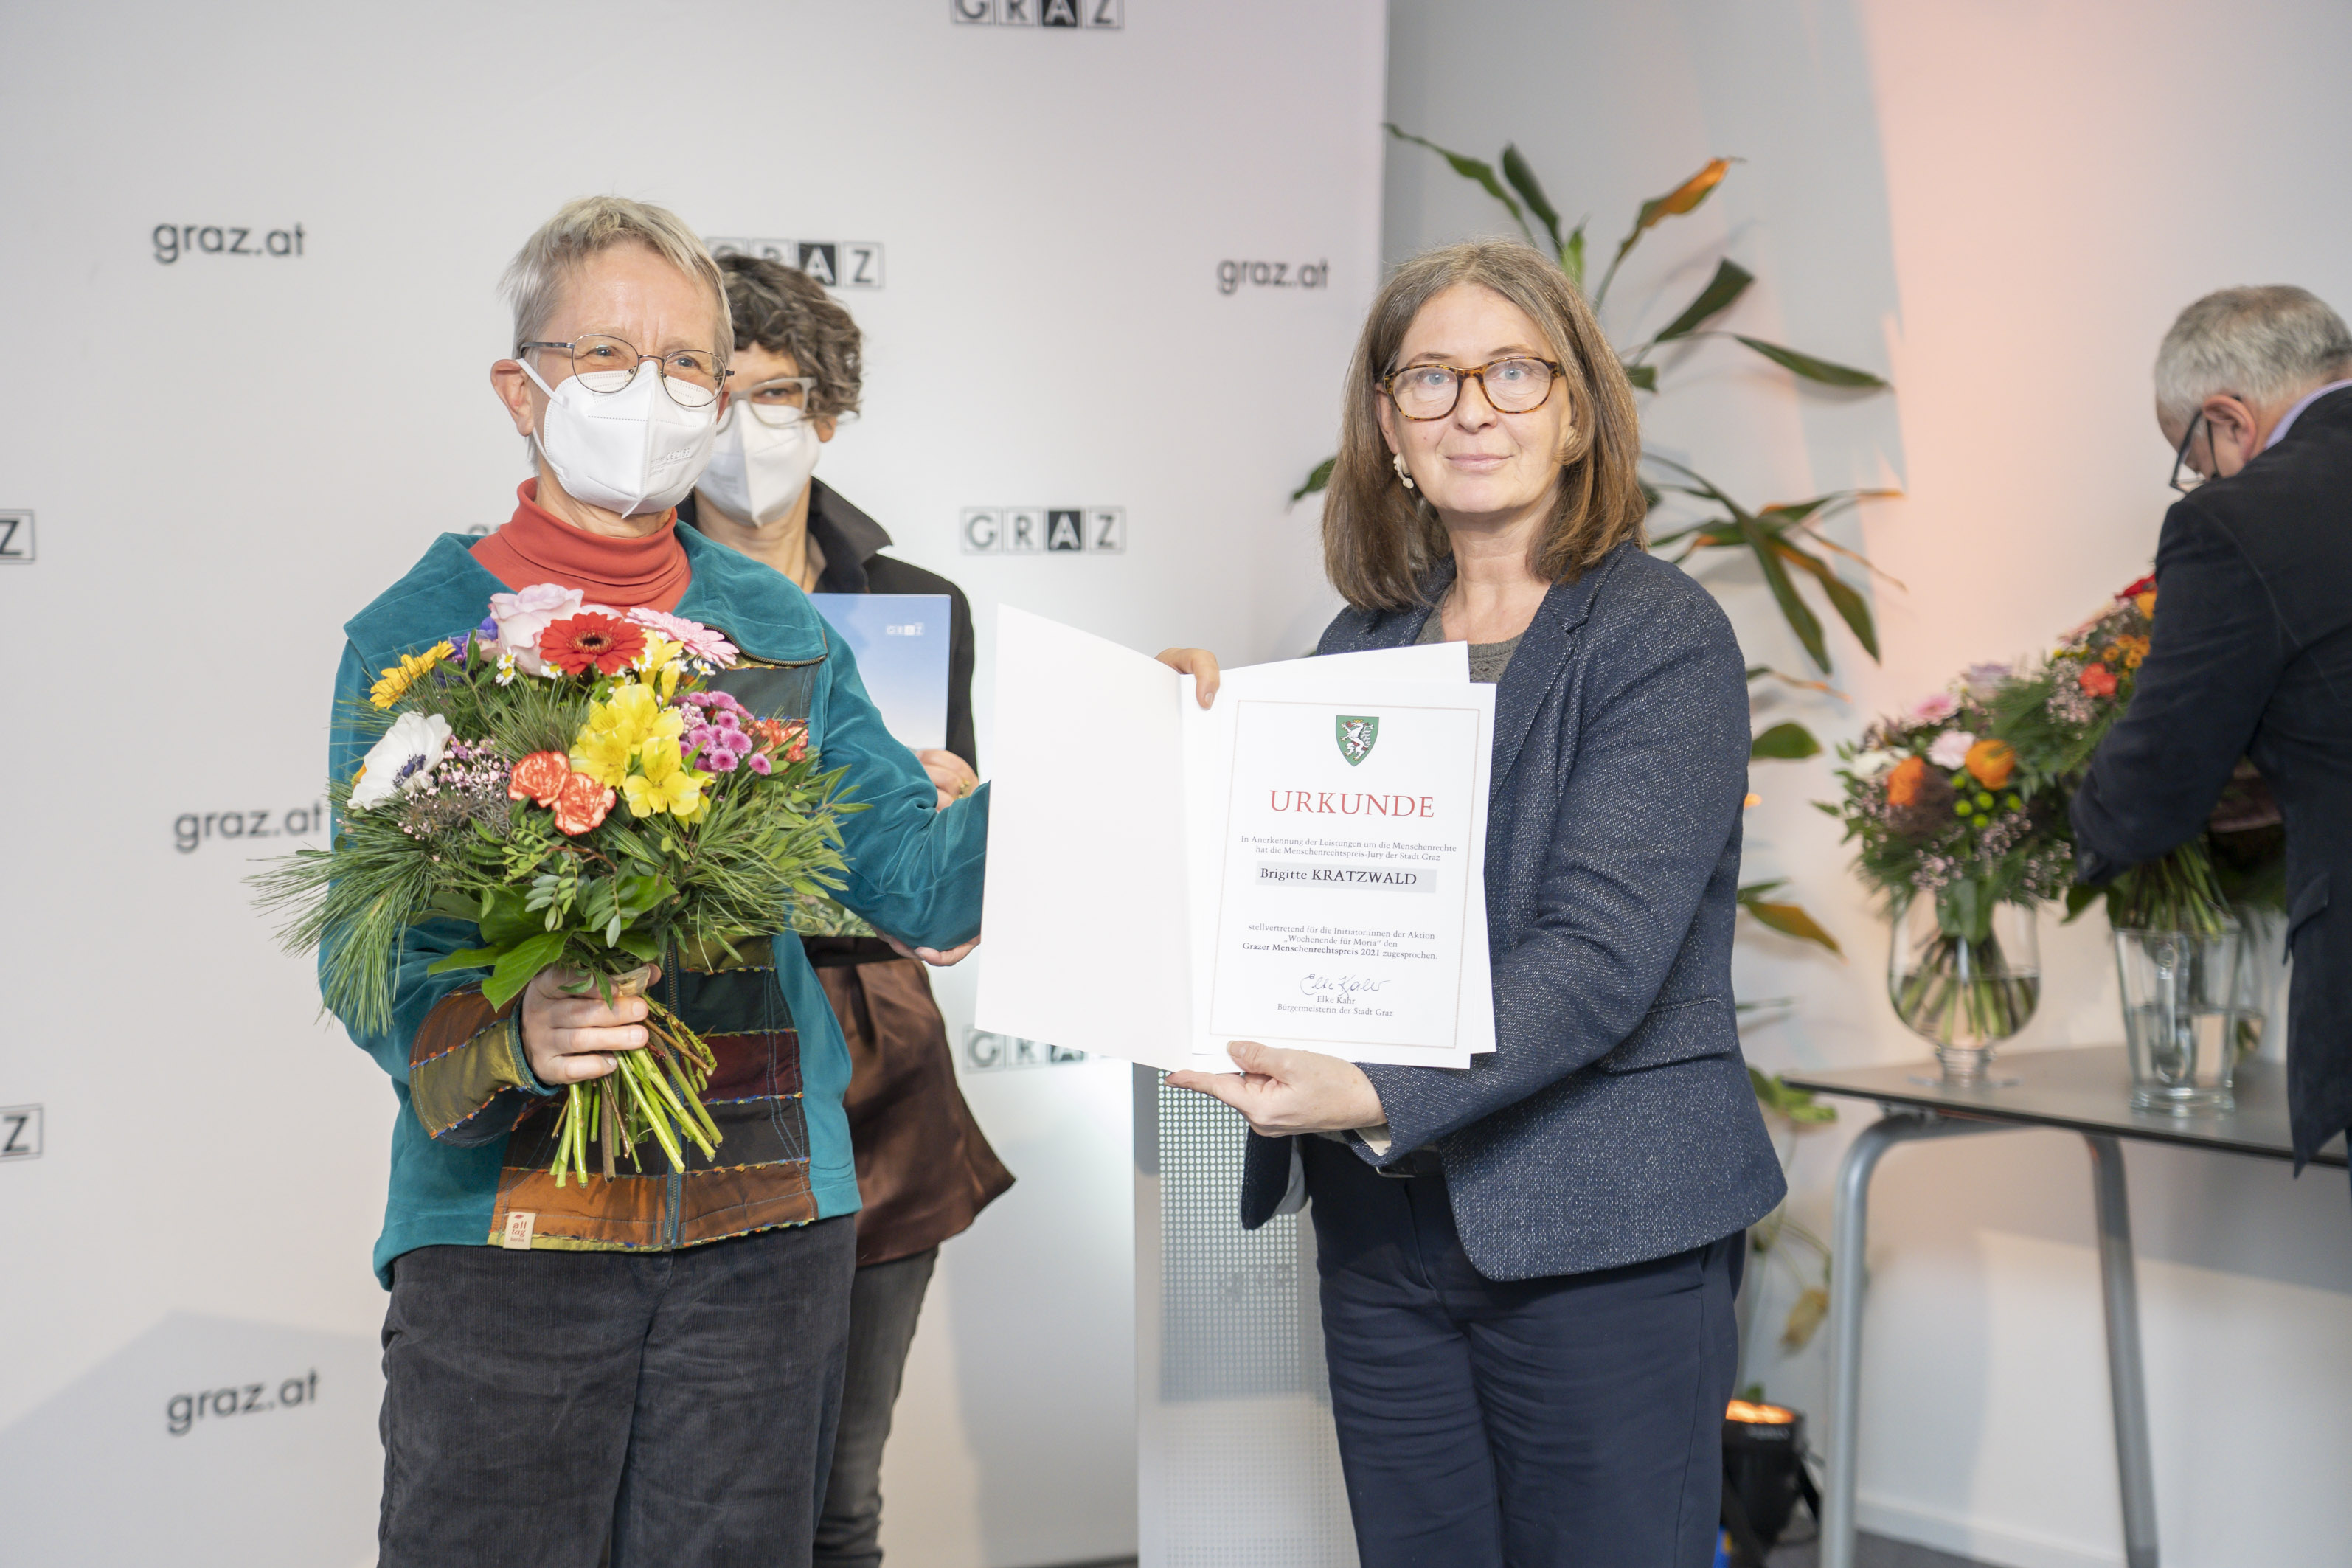 Preisträgerin Brigitte Kratzwald (l.) mit Bürgermeisterin Elke Kahr